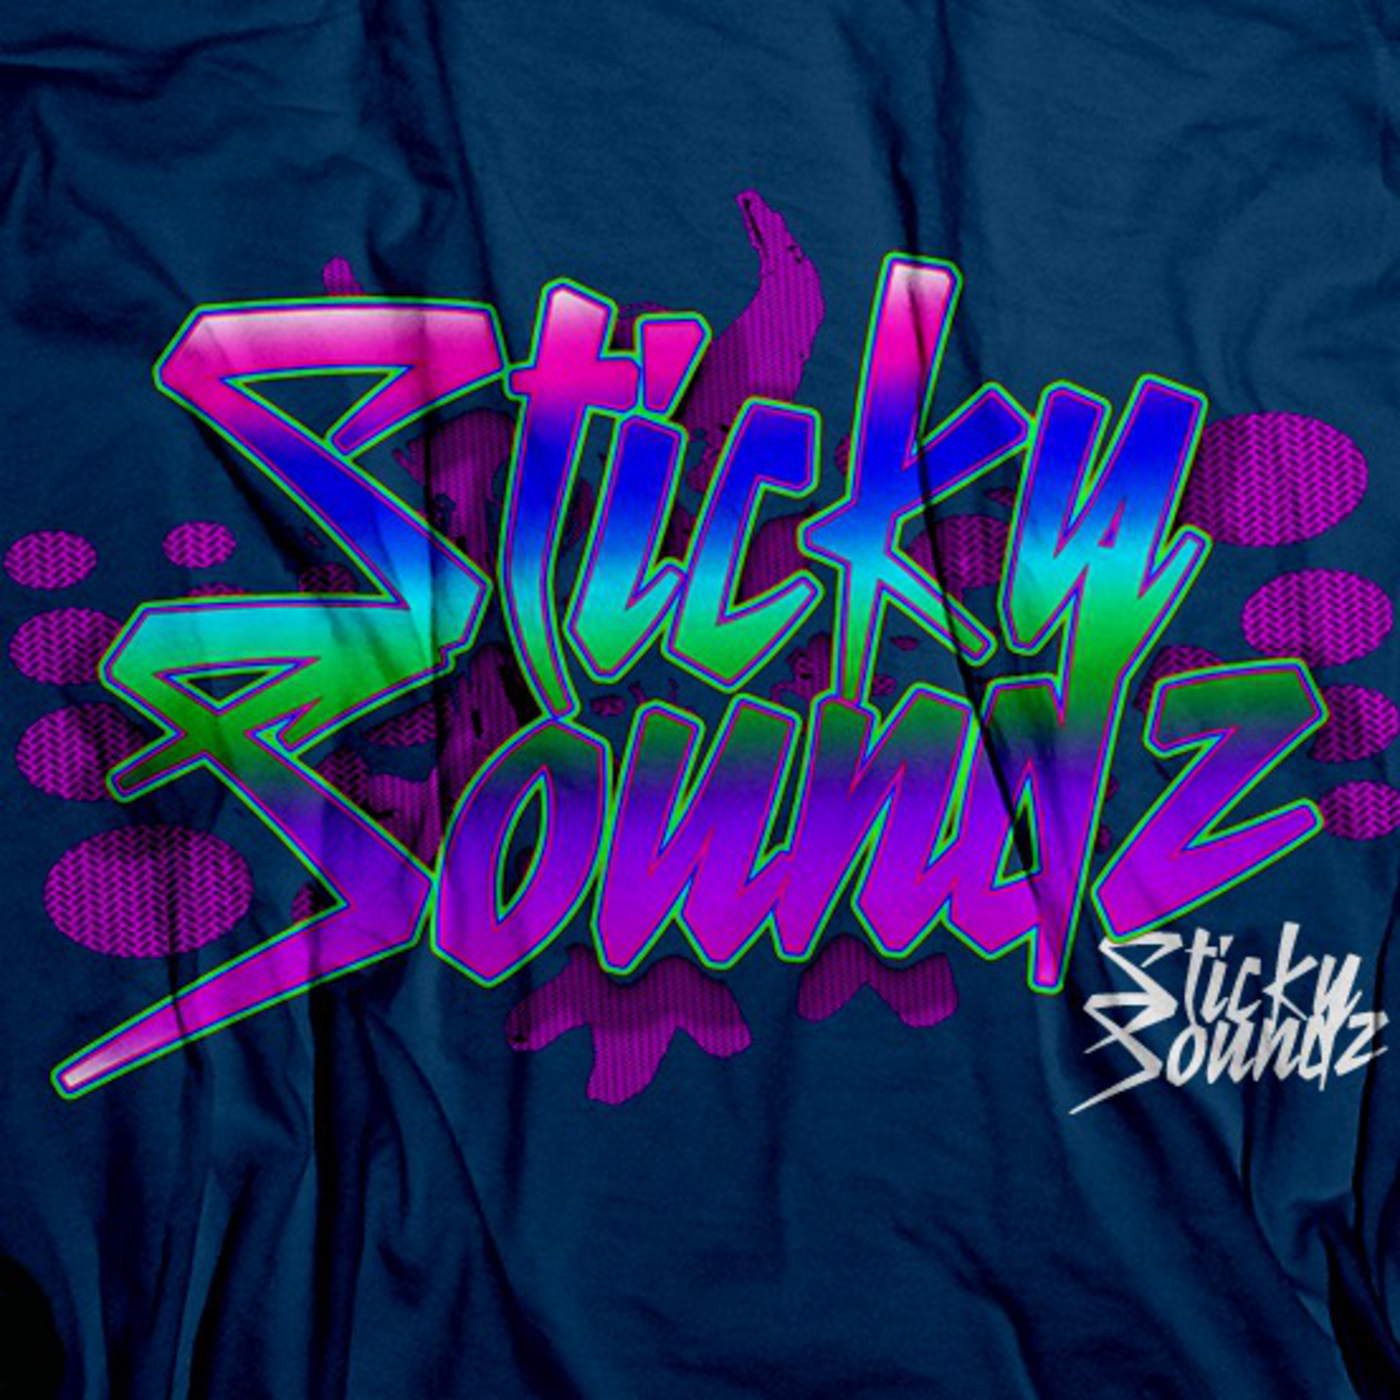 StickySoundz Presents: